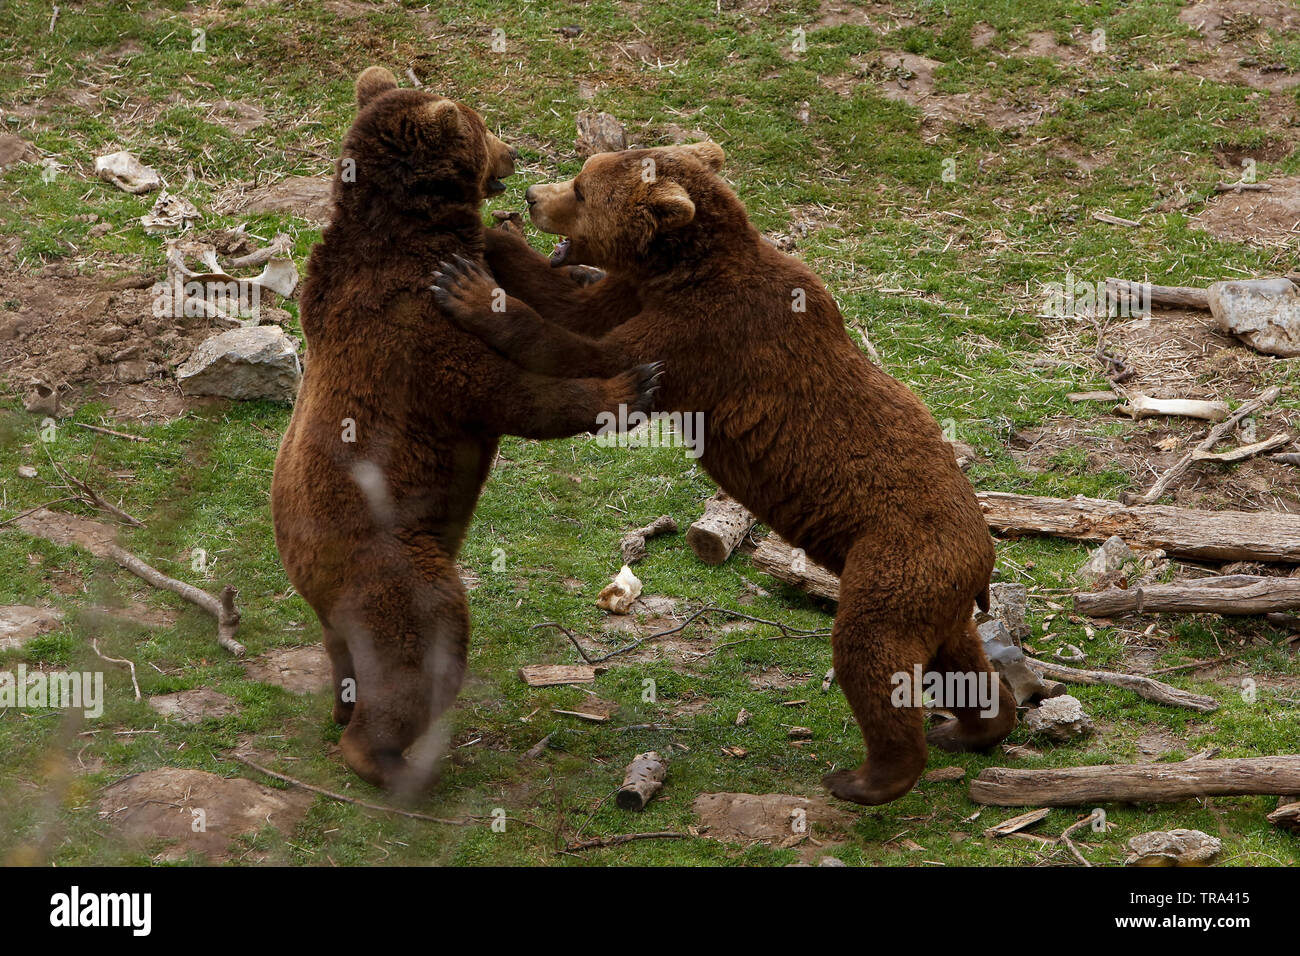 Unión oso (Ursus arctos) comer alimentos, en la aldea de Kutarevo, cerca de Gospic, Croacia. Sábado, 4 de abril, 2015 Foto de stock